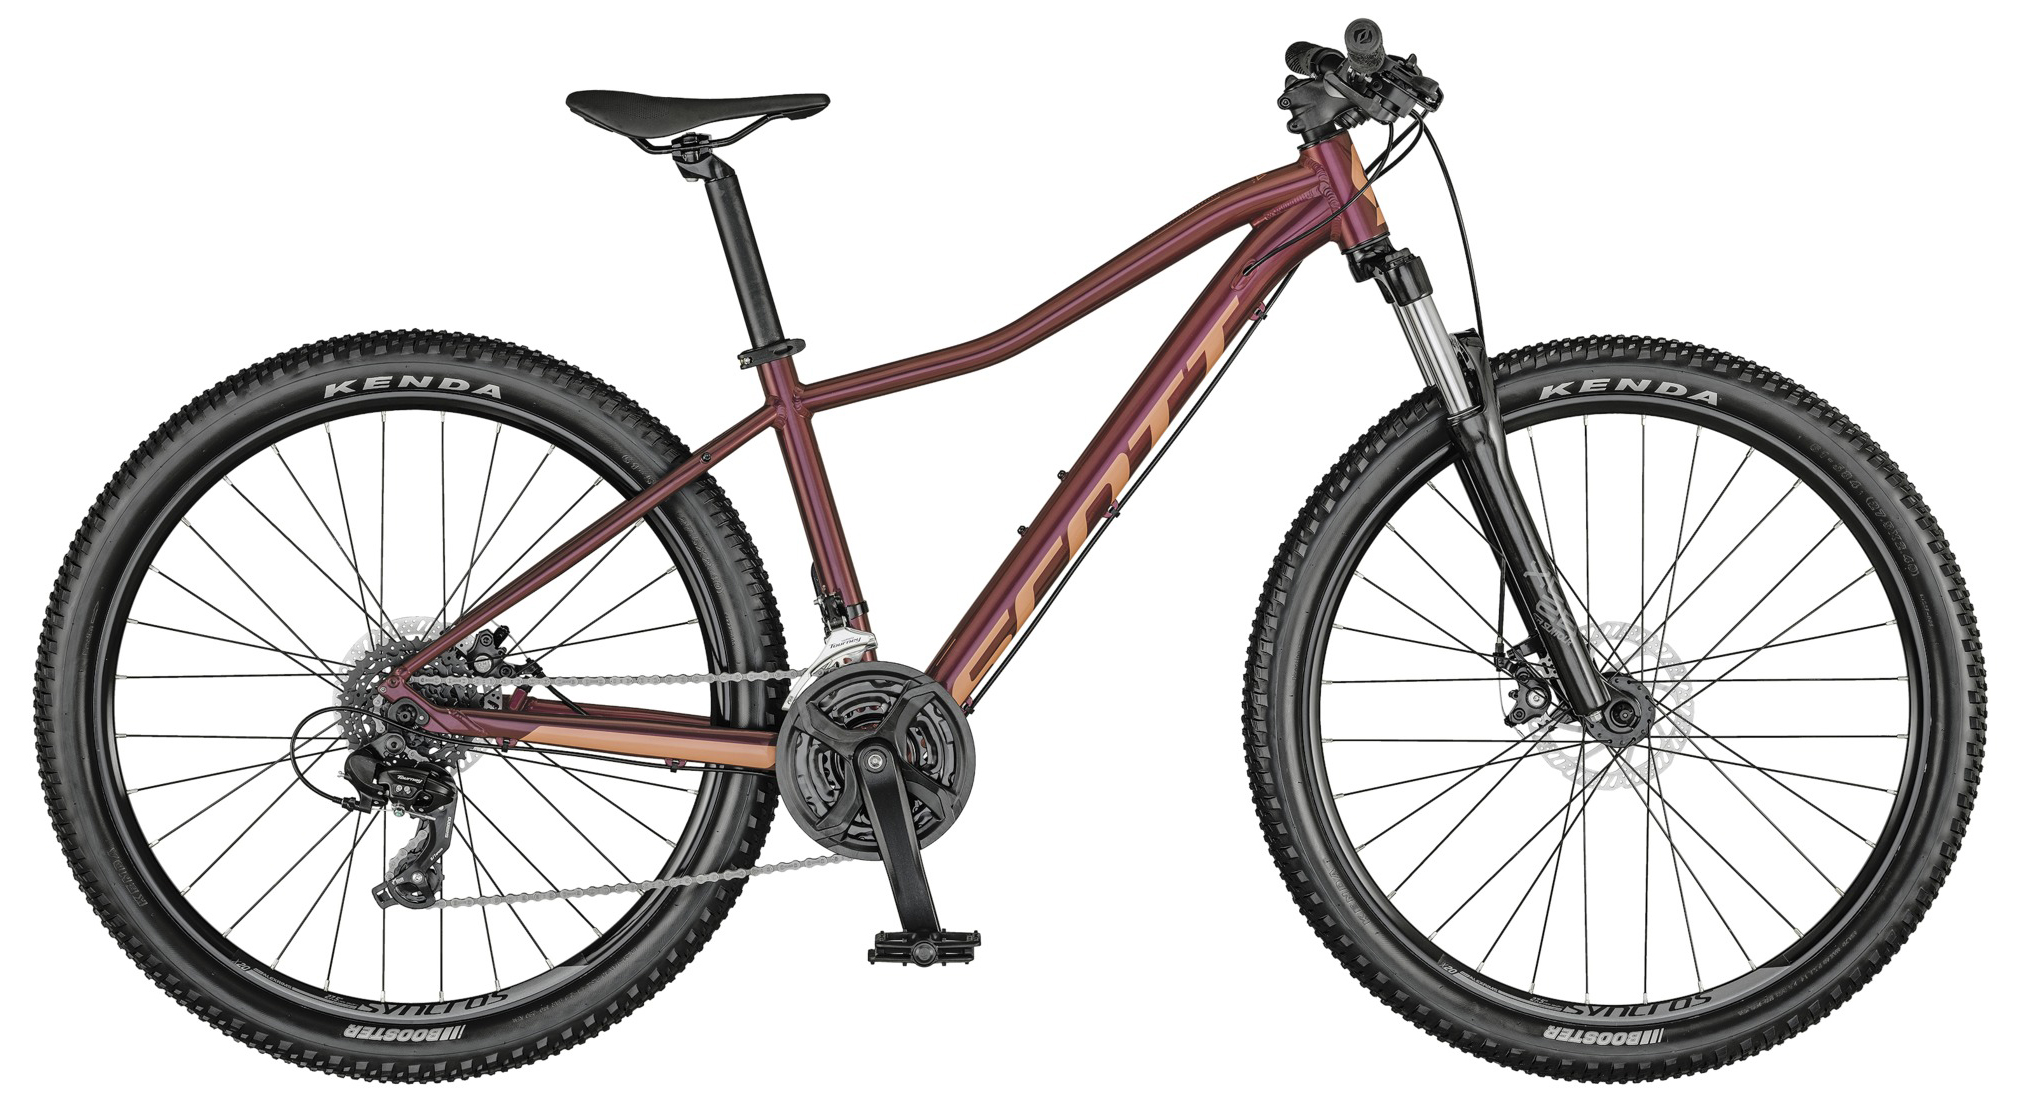  Велосипед Scott Contessa Active 60 29 (2021) 2021